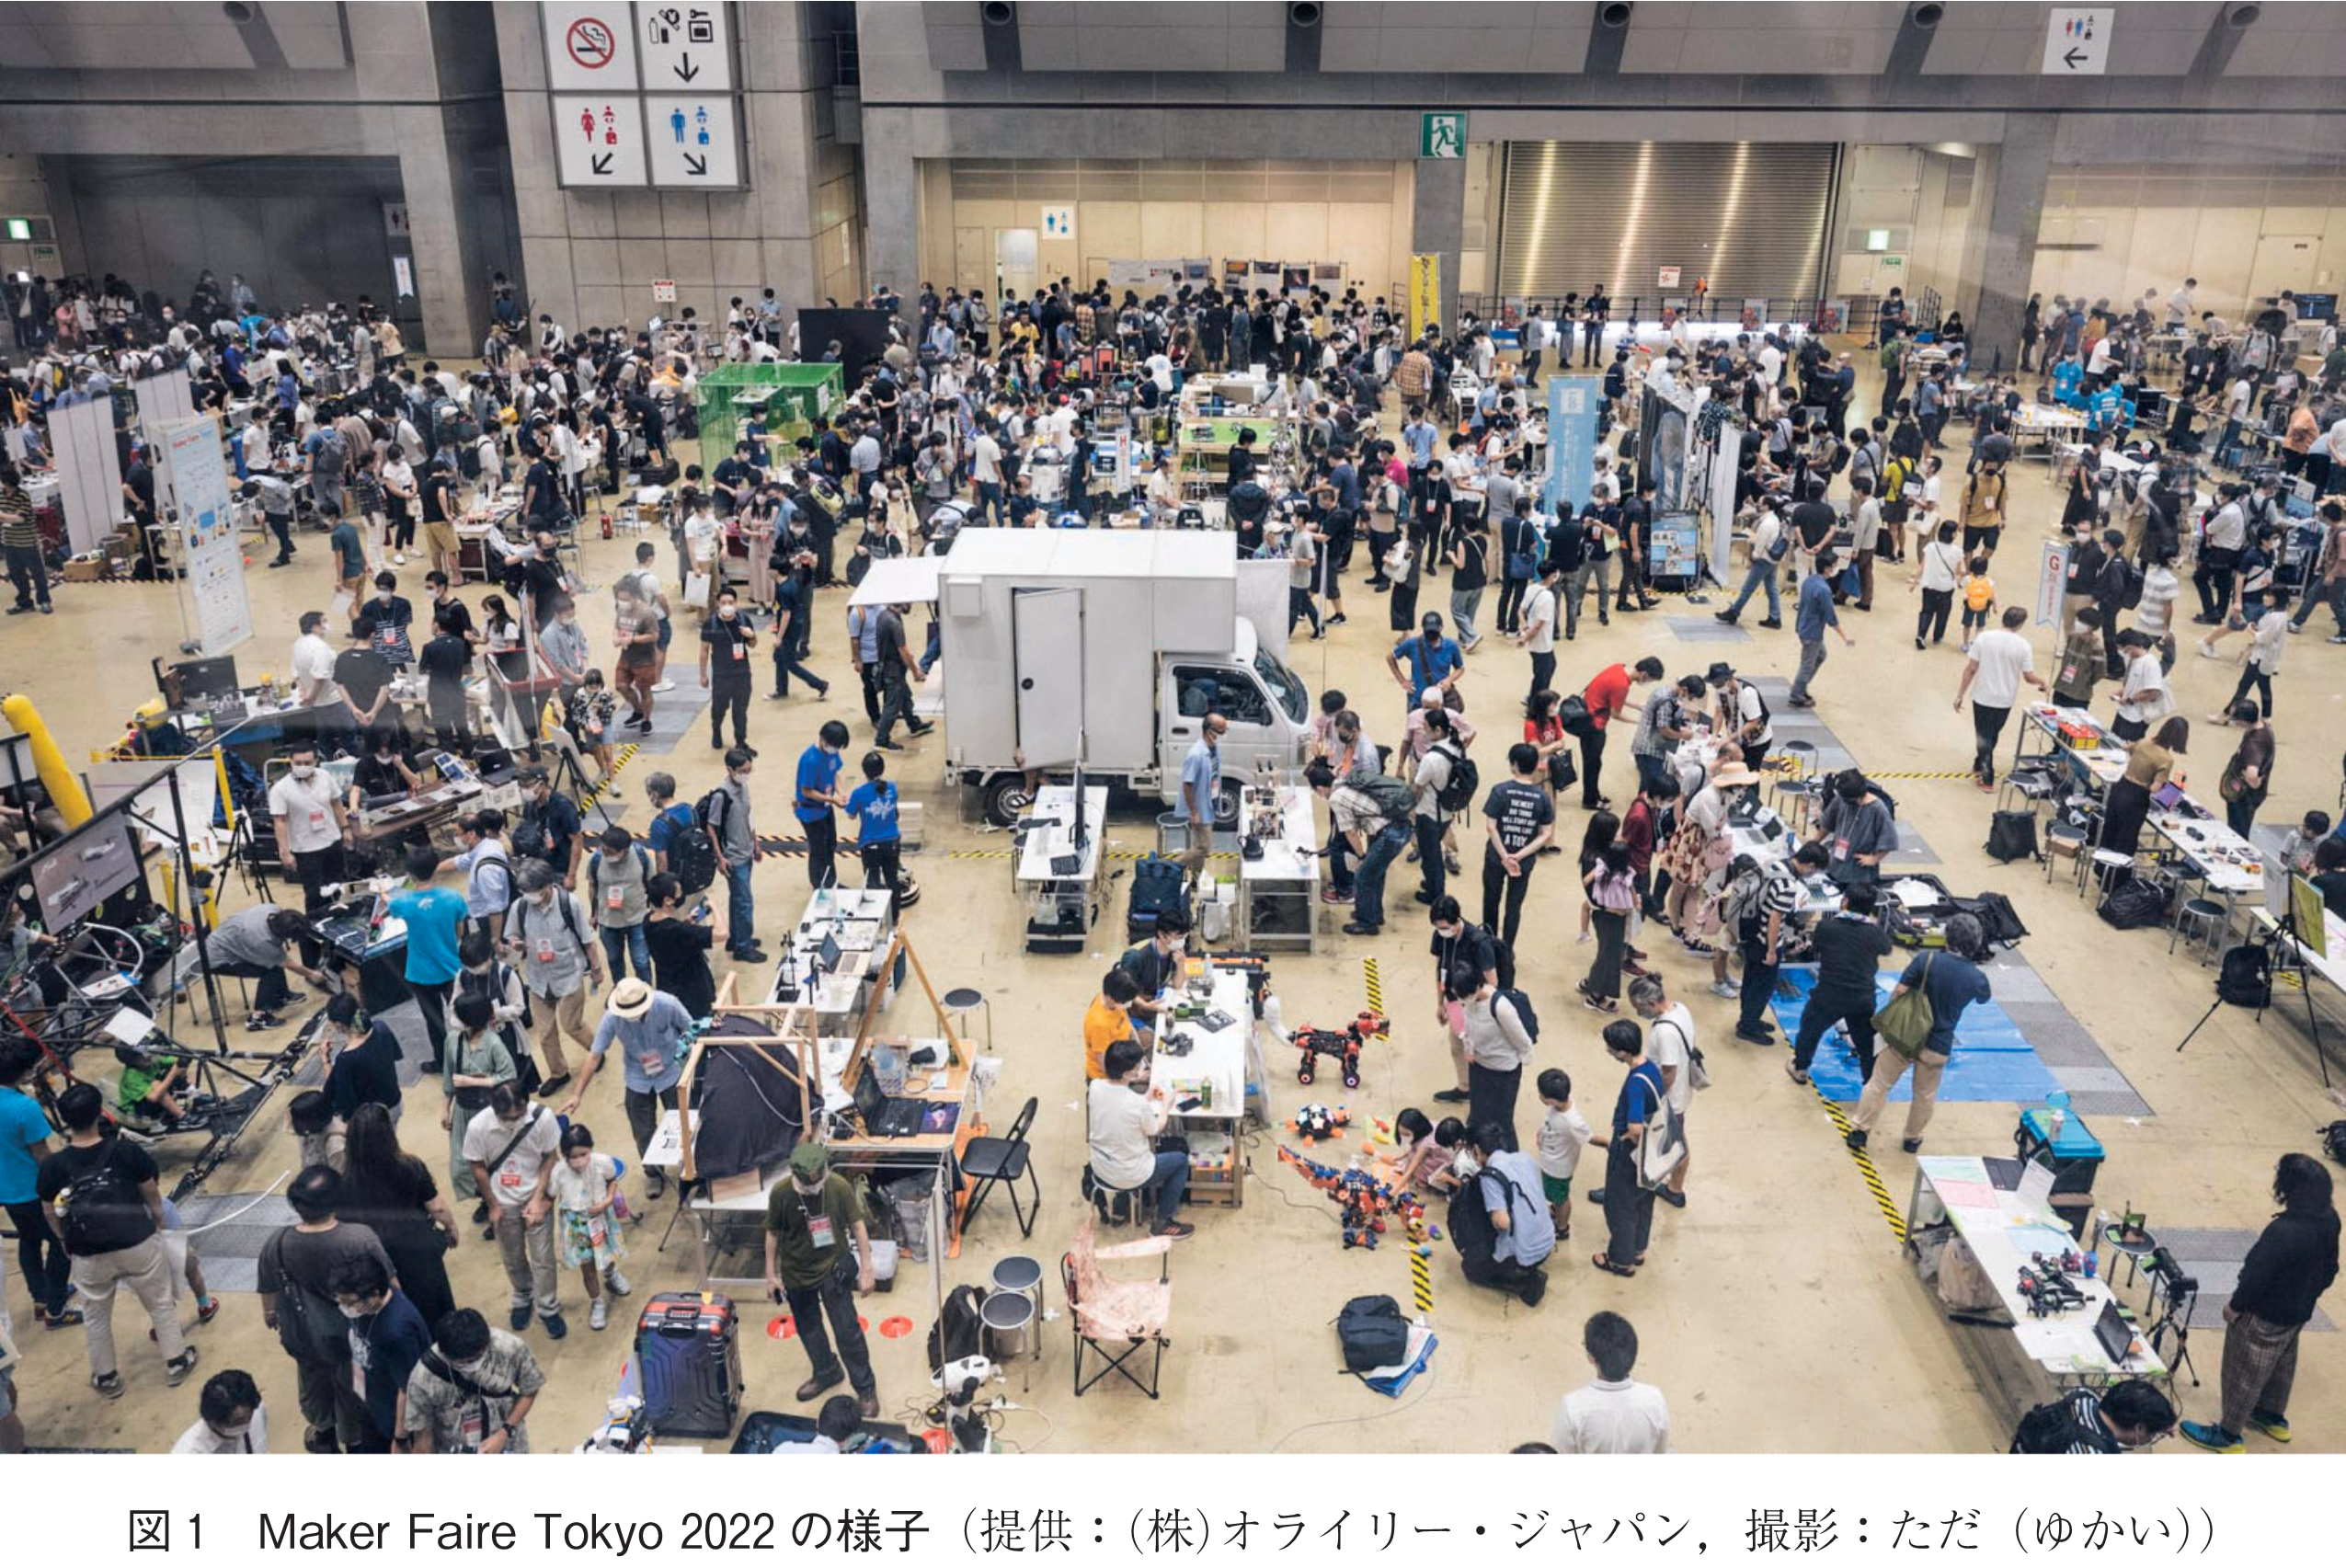 図1　Maker Faire Tokyo 2022の様子（提供：(株)オライリー・ジャパン，撮影：ただ（ゆかい））